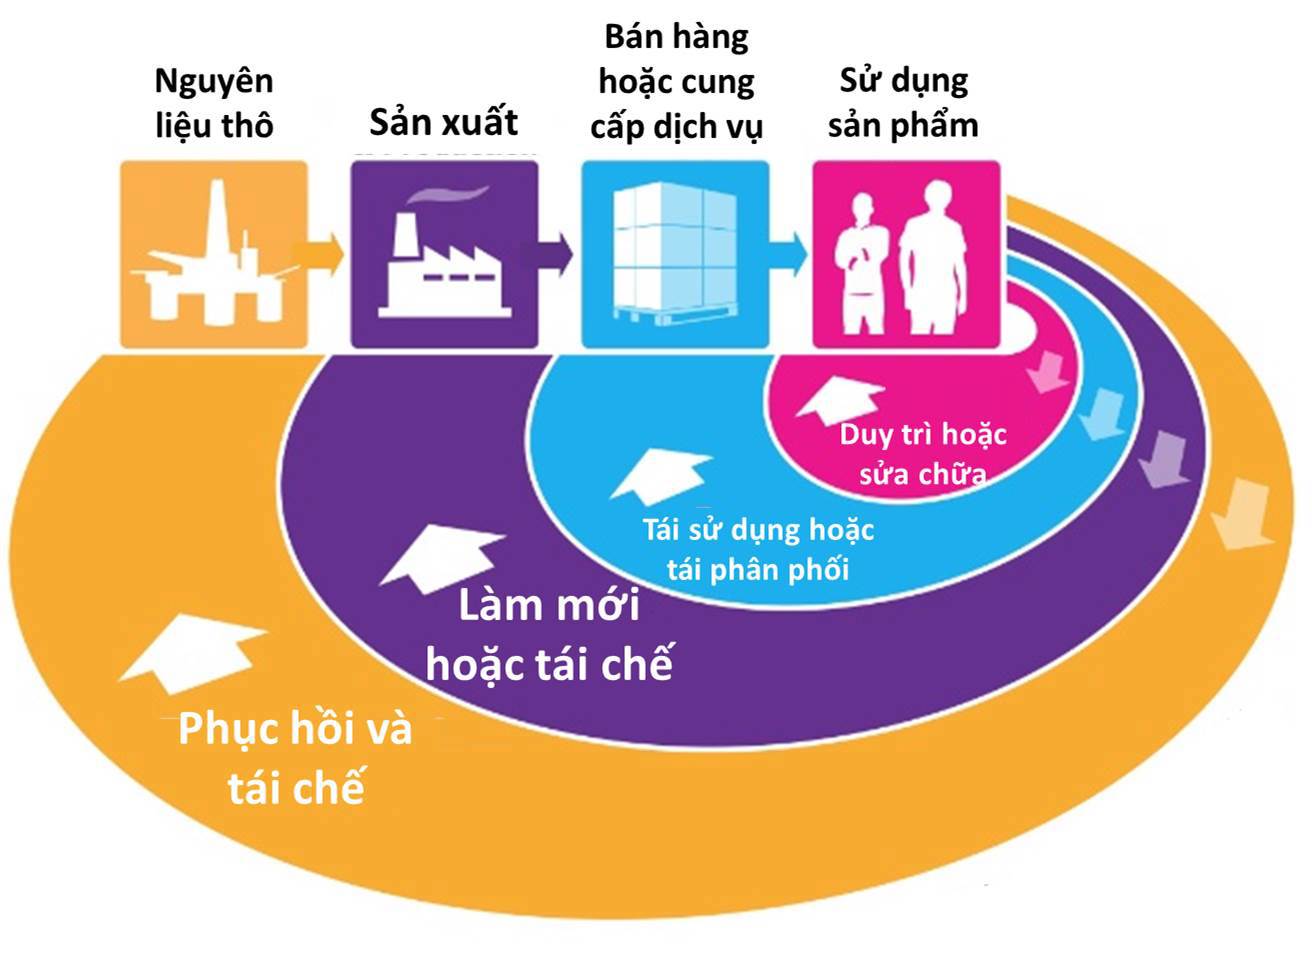 Kinh tế tuần hoàn  hướng phát triển bền vững cho doanh nghiệp Việt Nam   VOVVN